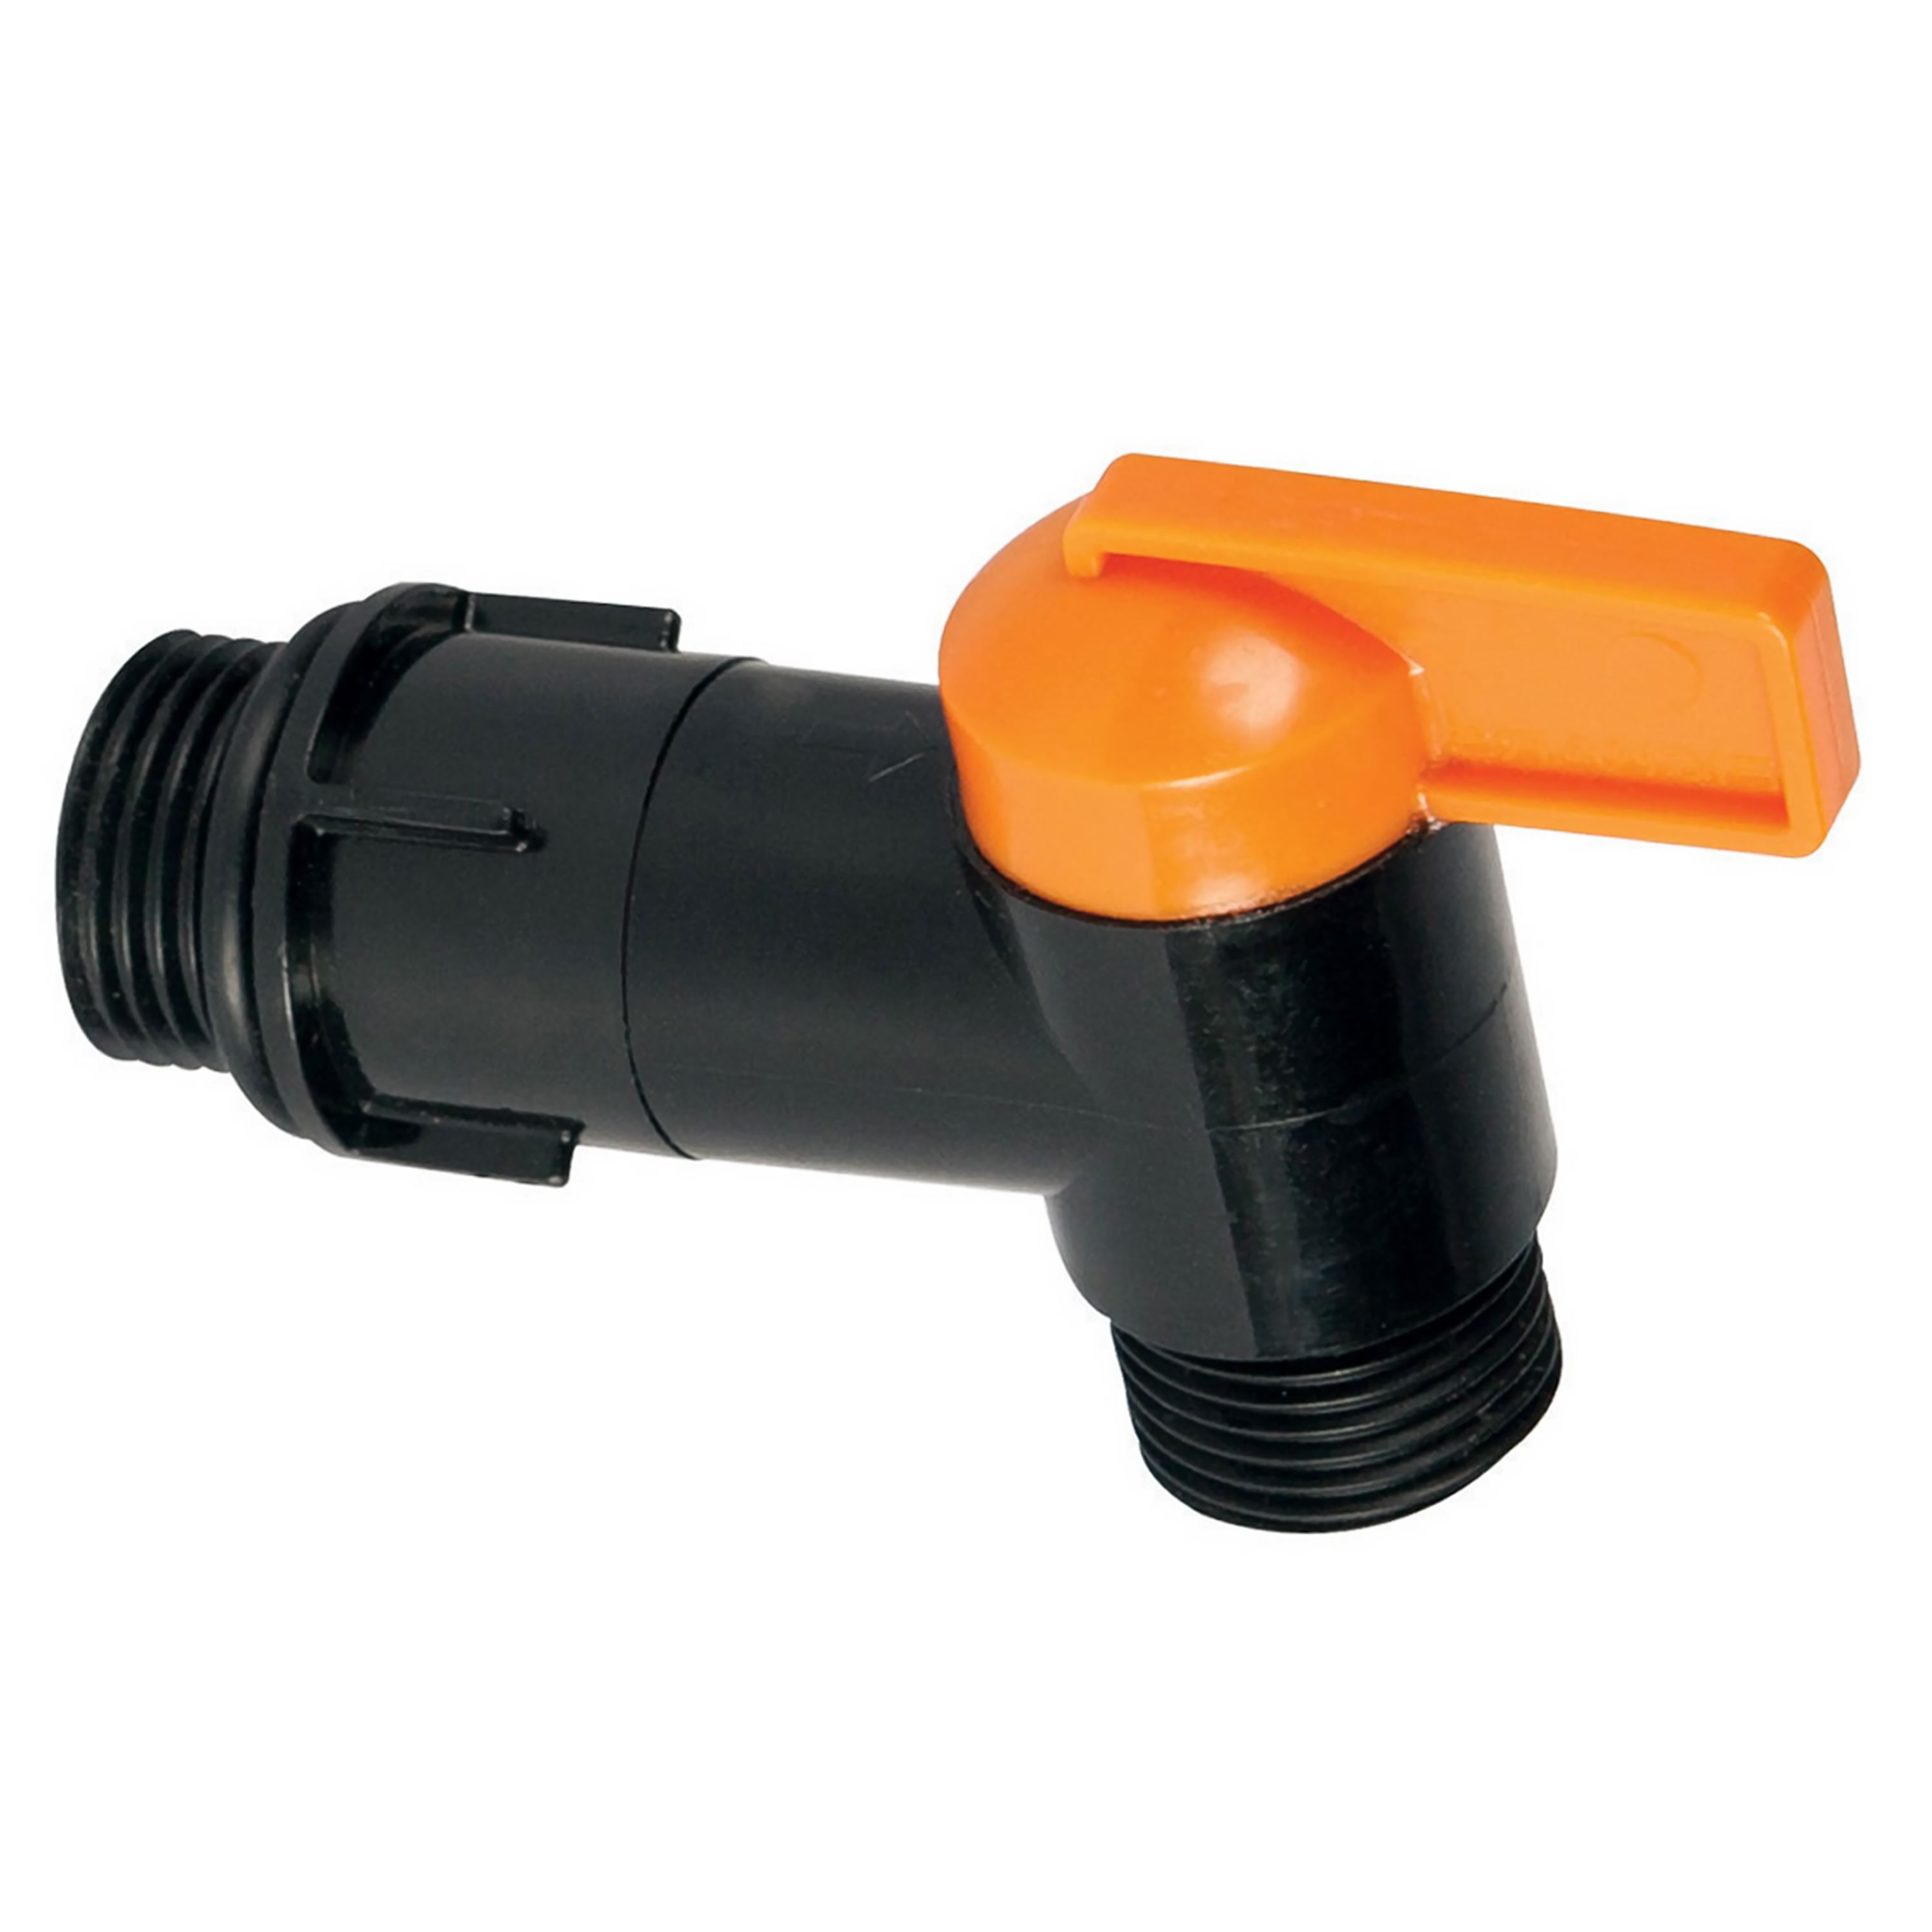 Fiskars Black & Orange Plastic Rain Collection Barrel Spigot Faucet Tap Spout 